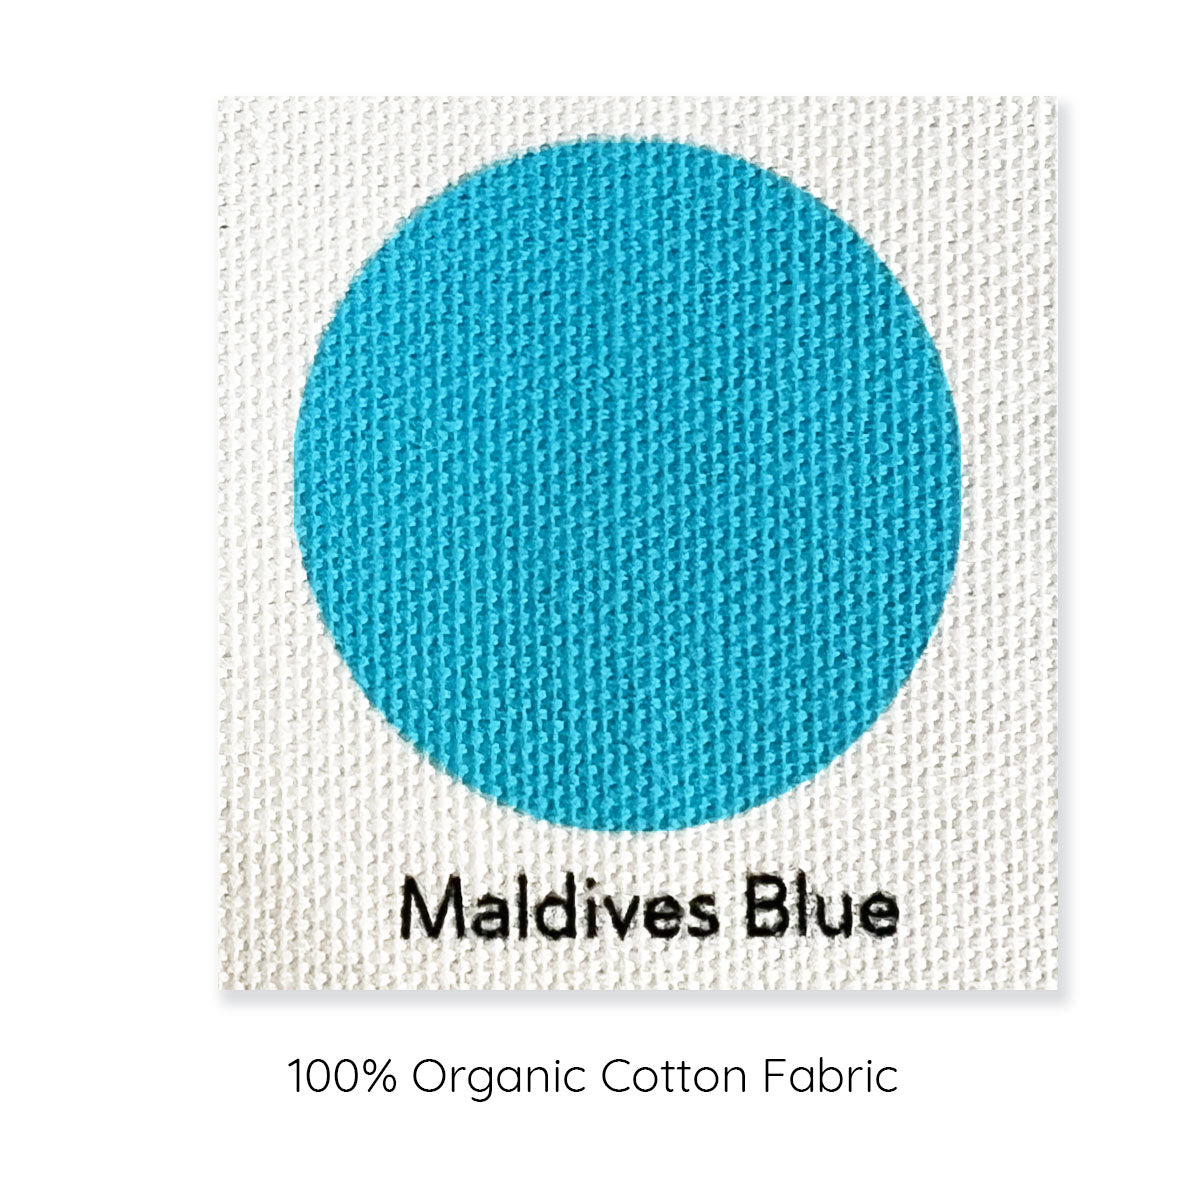 Maldives blue organic cotton blue colour swatch